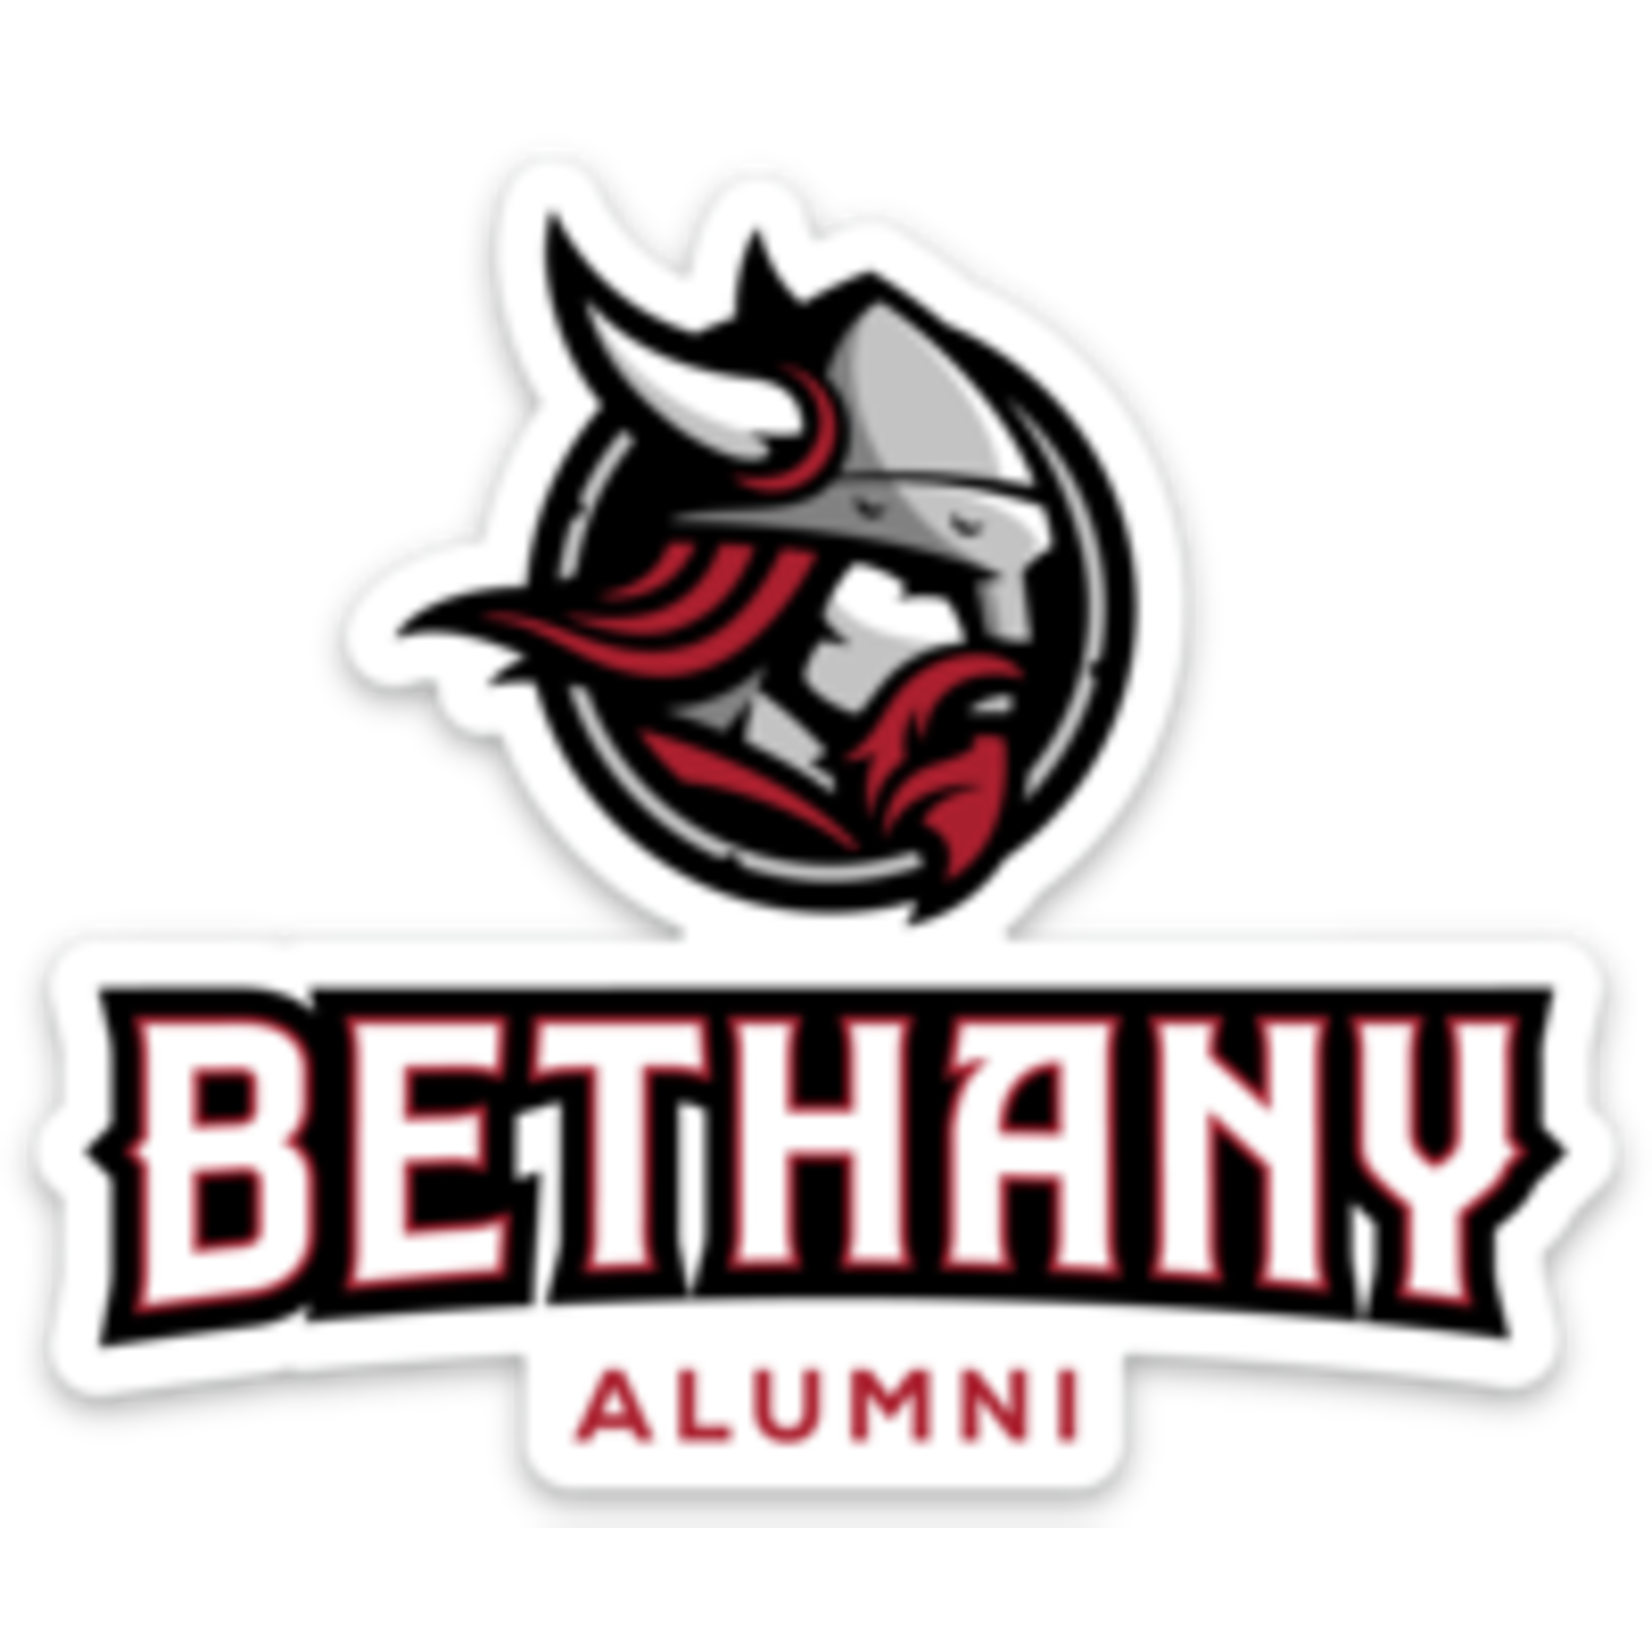 Sticker Mule Sticker BLC - Bethany Alumni